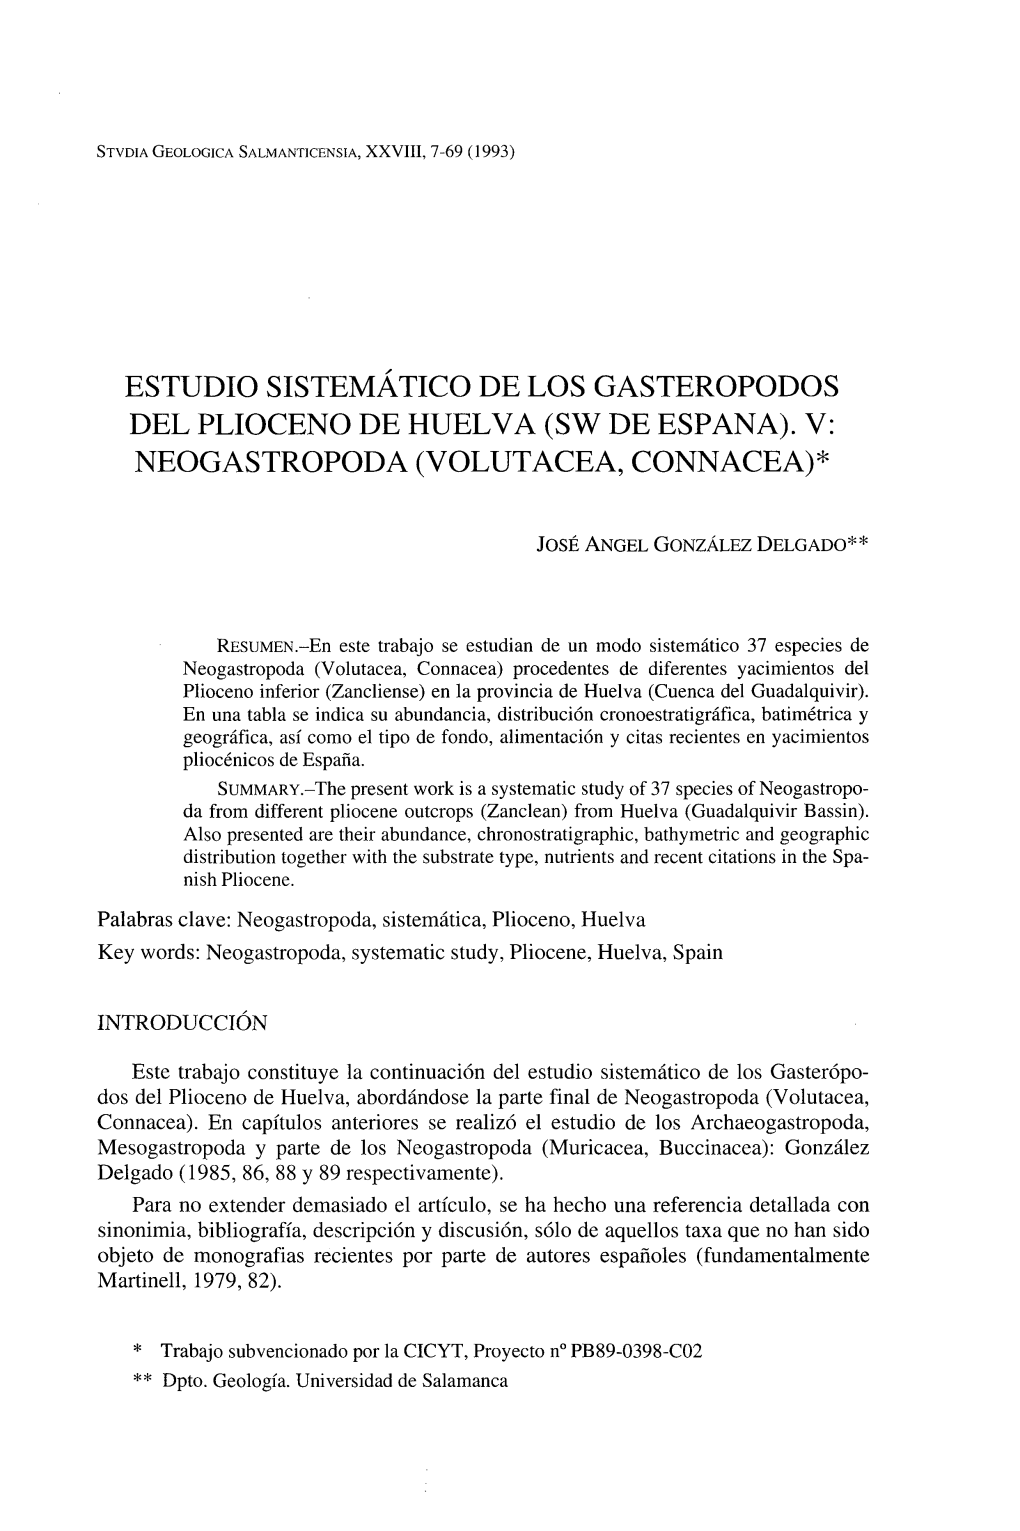 Estudio Sistemático De Los Gasteropodos Del Plioceno De Huelva